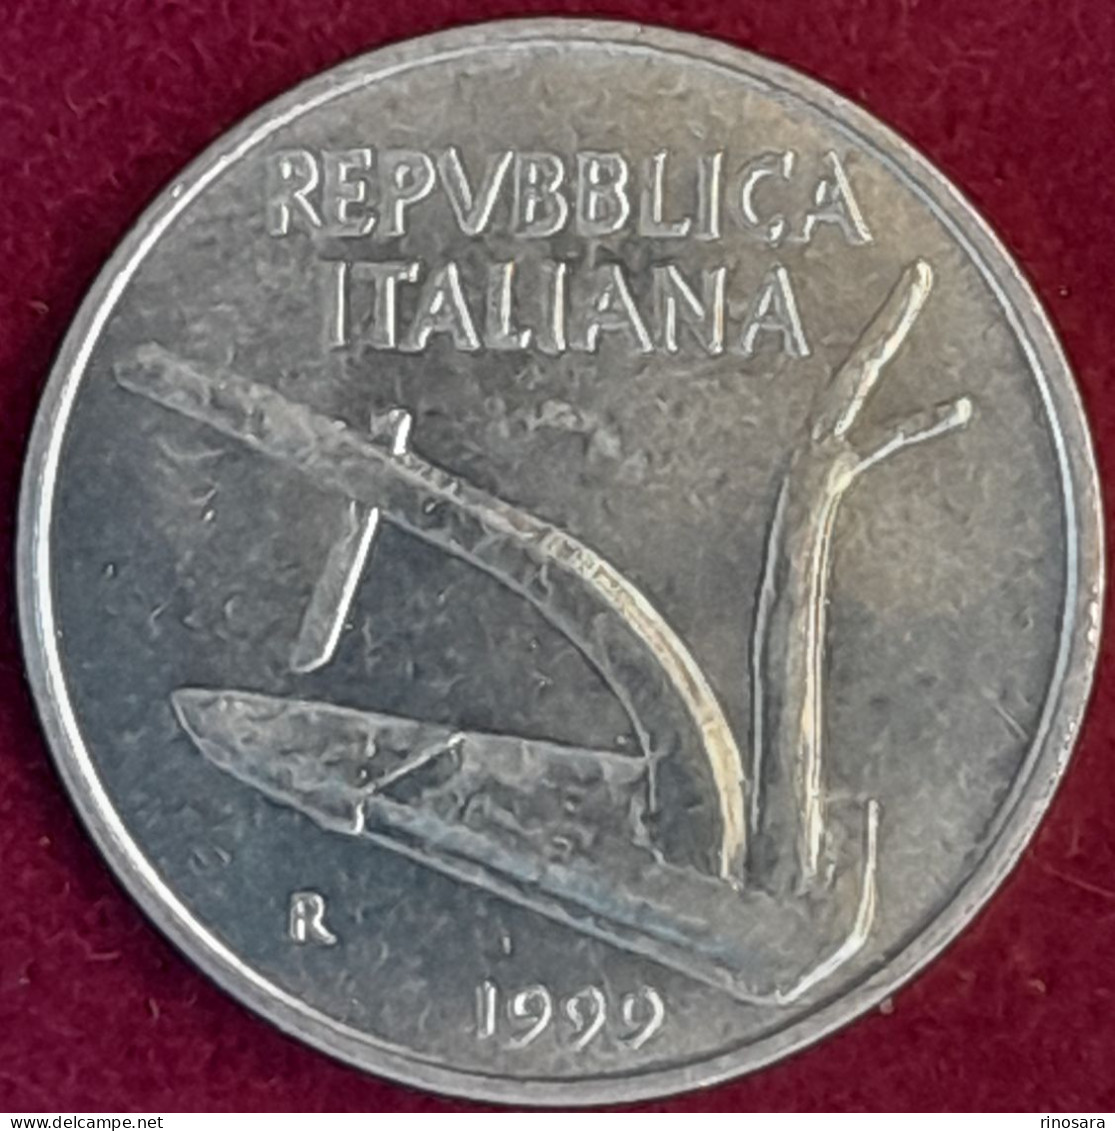 Errore Di Conio 10 Lire 1999 Repubblica Italiana - 10 Liras